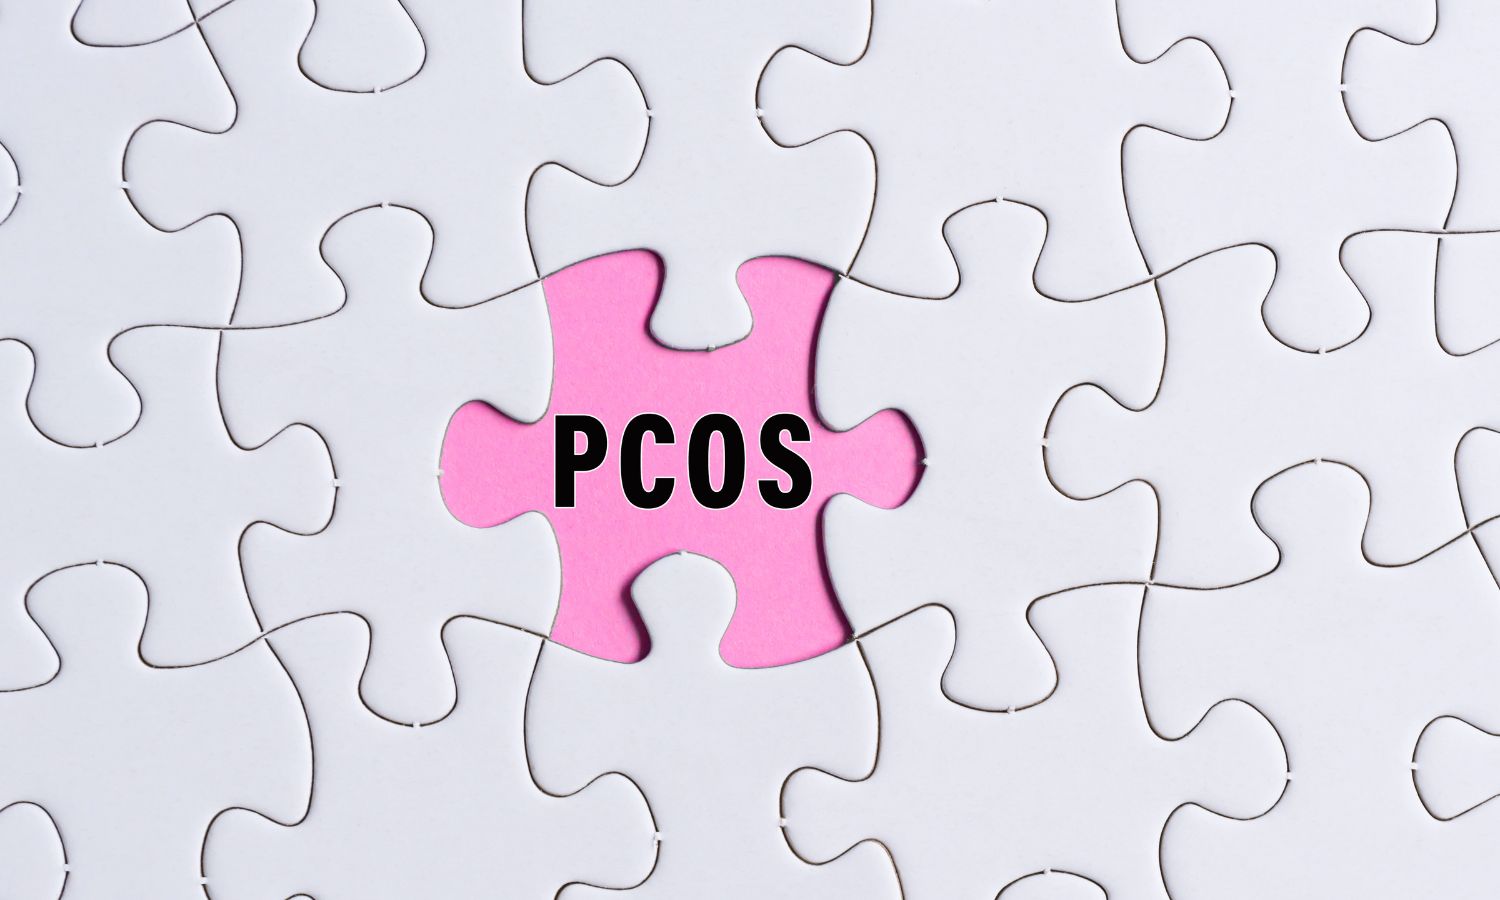 שחלות פוליציסטיות תסמינים PCOS